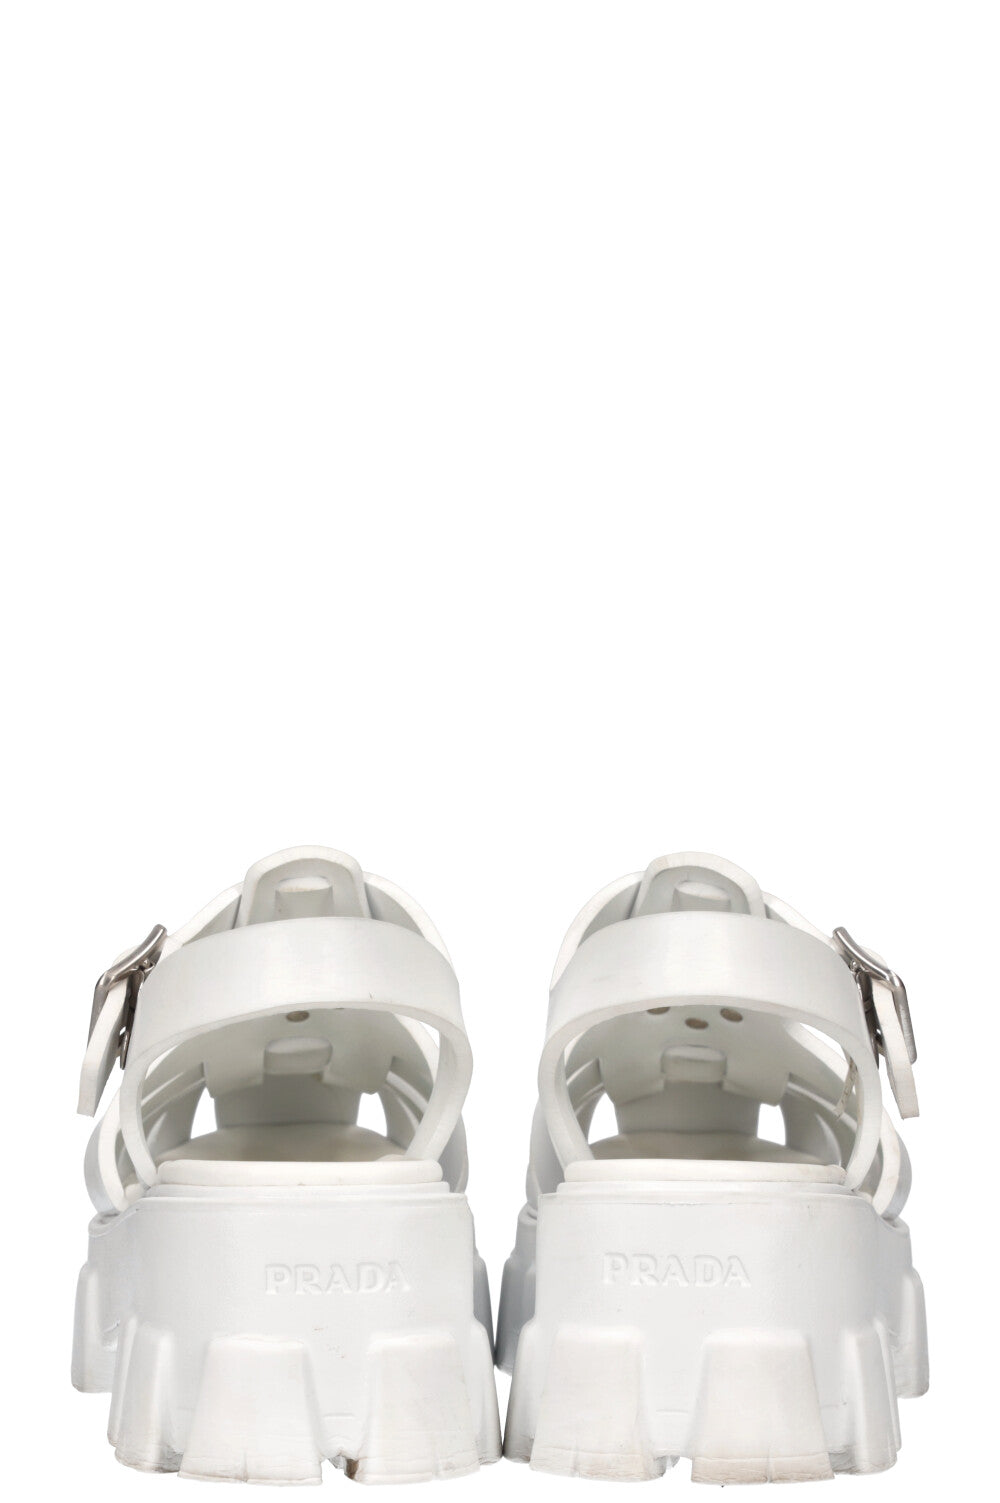 PRADA Foam Rubber Sandals White